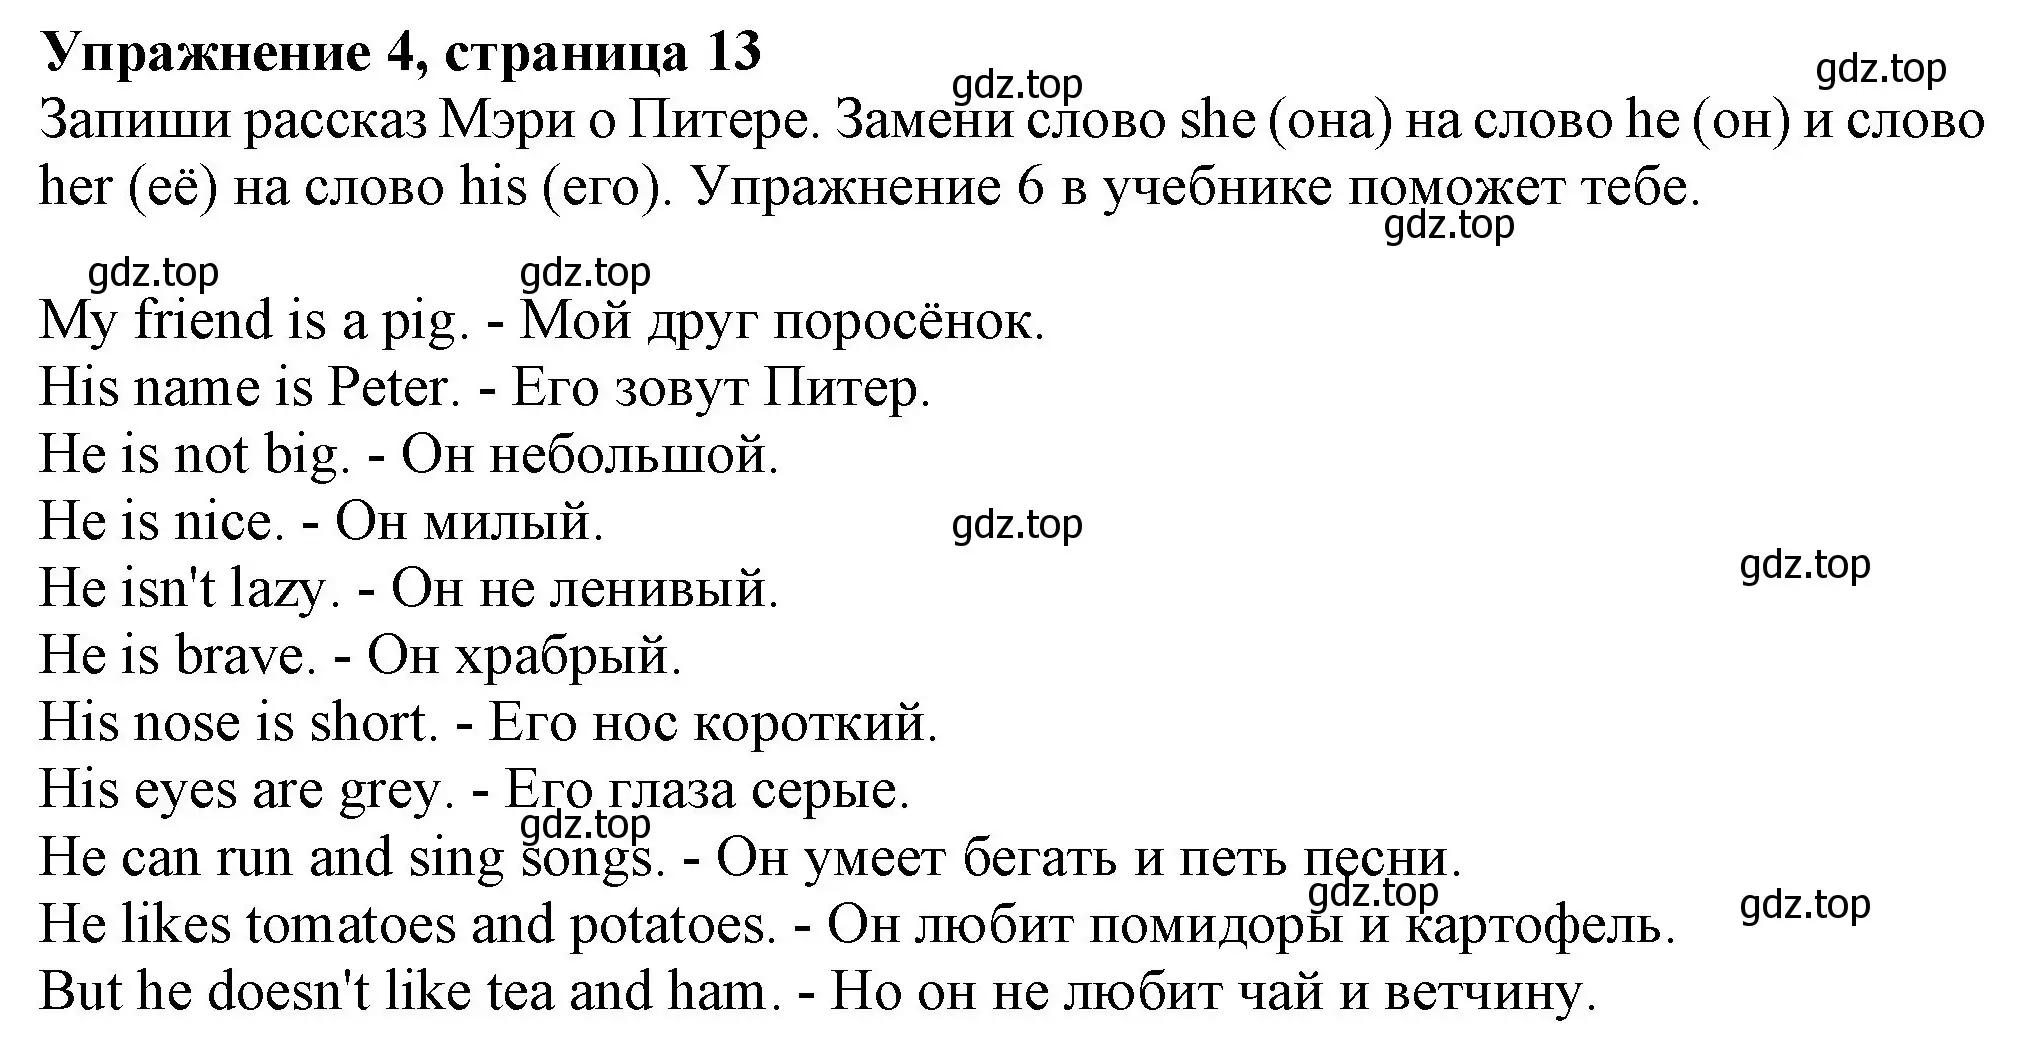 Решение номер 4 (страница 13) гдз по английскому языку 3 класс Биболетова, Денисенко, рабочая тетрадь